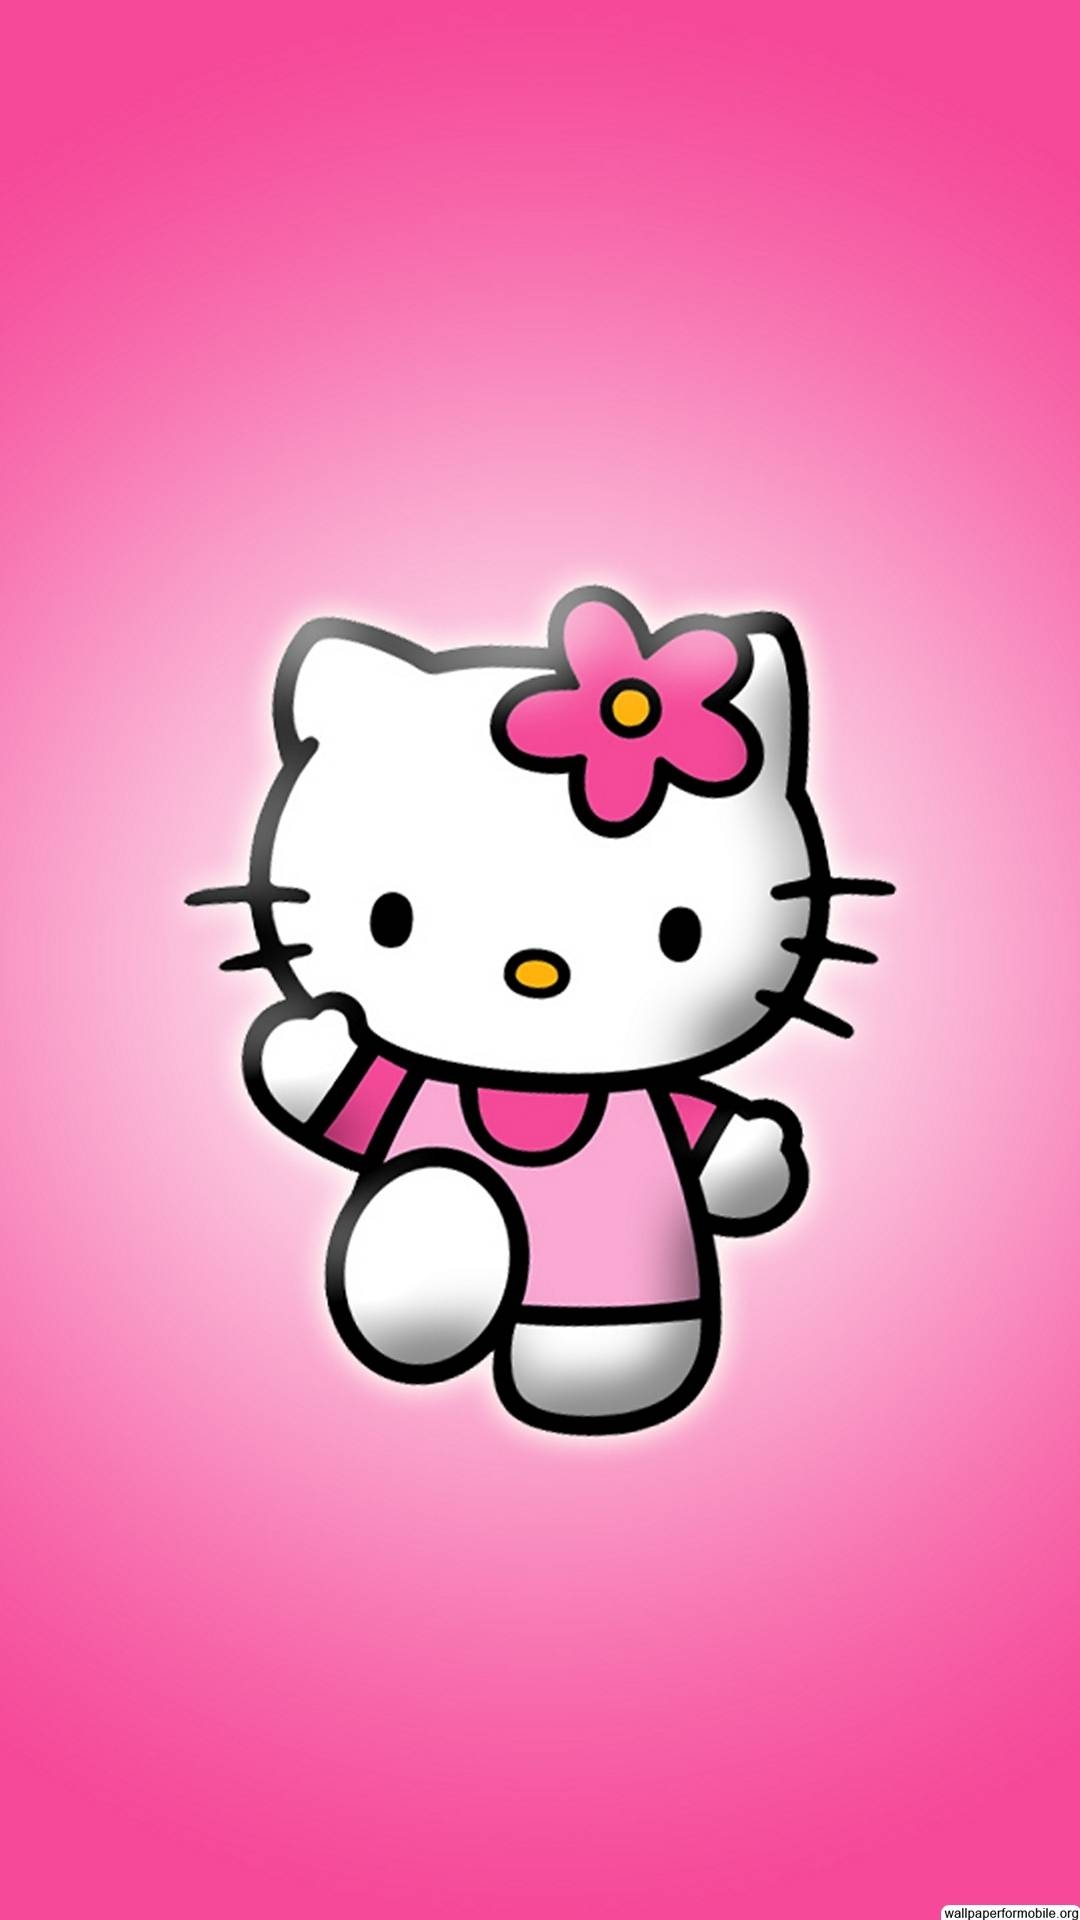 Cute Hello Kitty - Walking